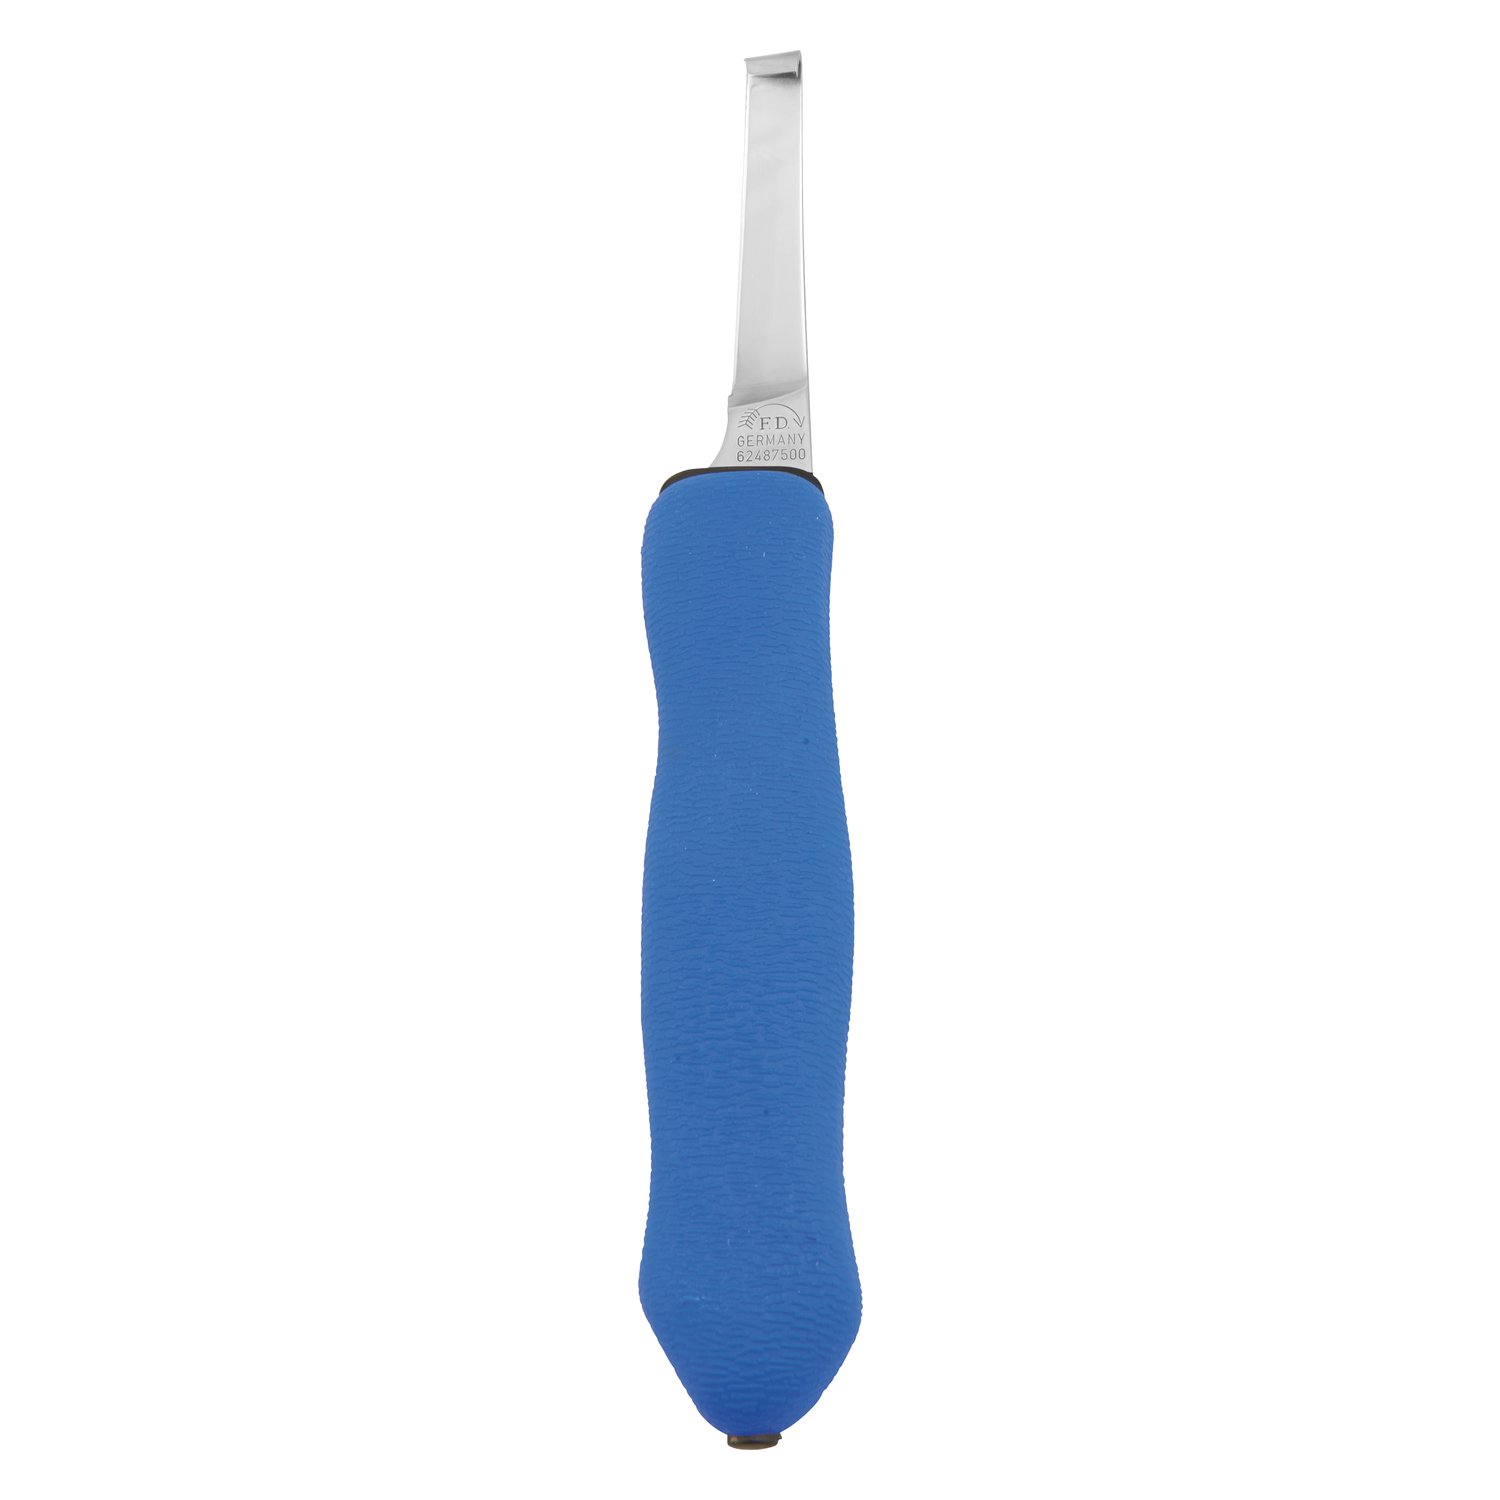 DICK Hufmesser Expert-Grip 2K blau | linksschneidend